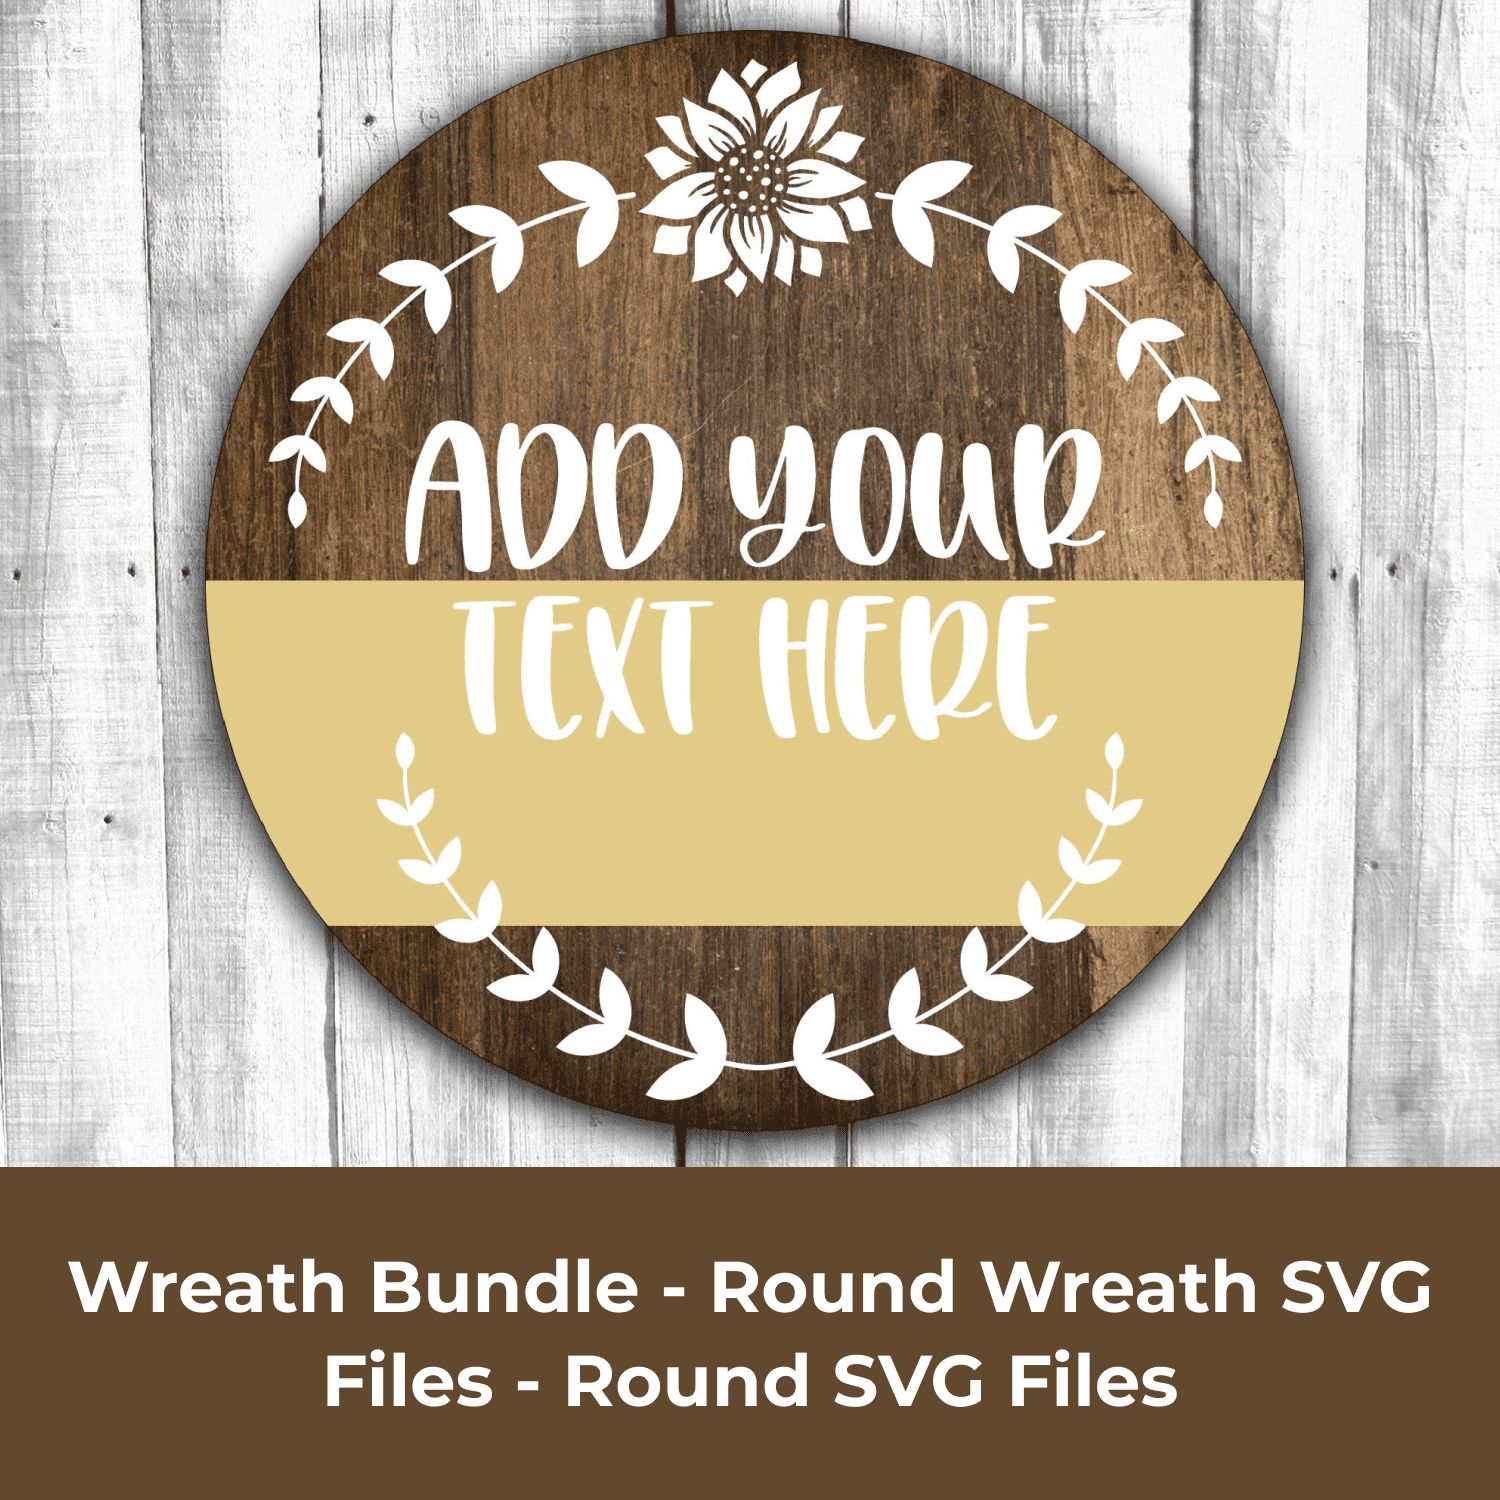 Wreath Bundle - Round Wreath SVG Files - Round SVG Files.